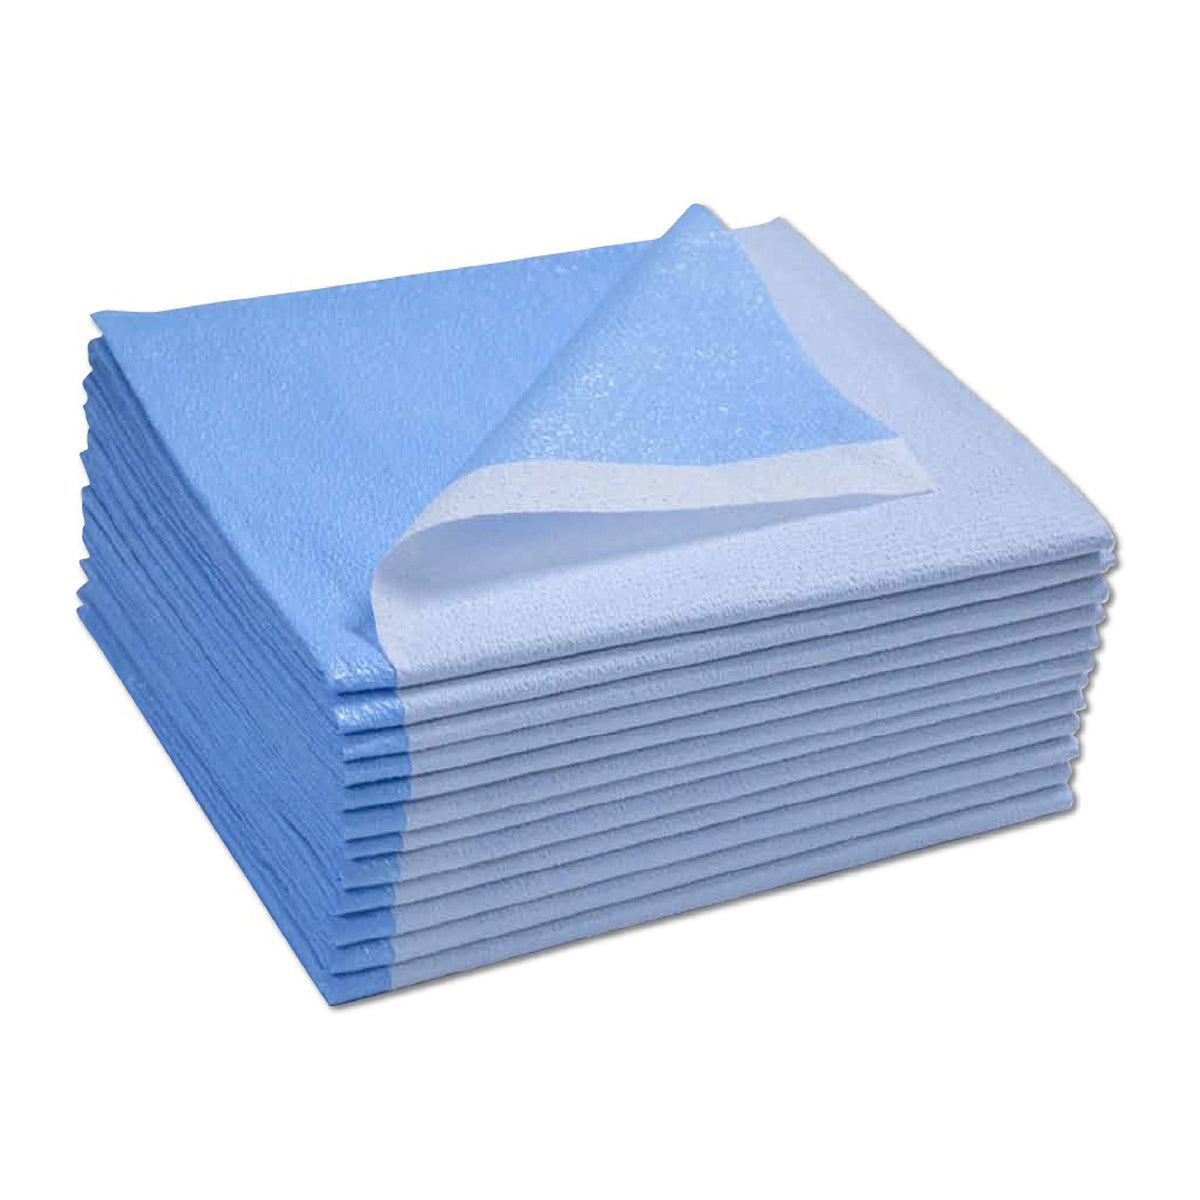 Drape Sheets (100) -  Blue - 40" x 48"